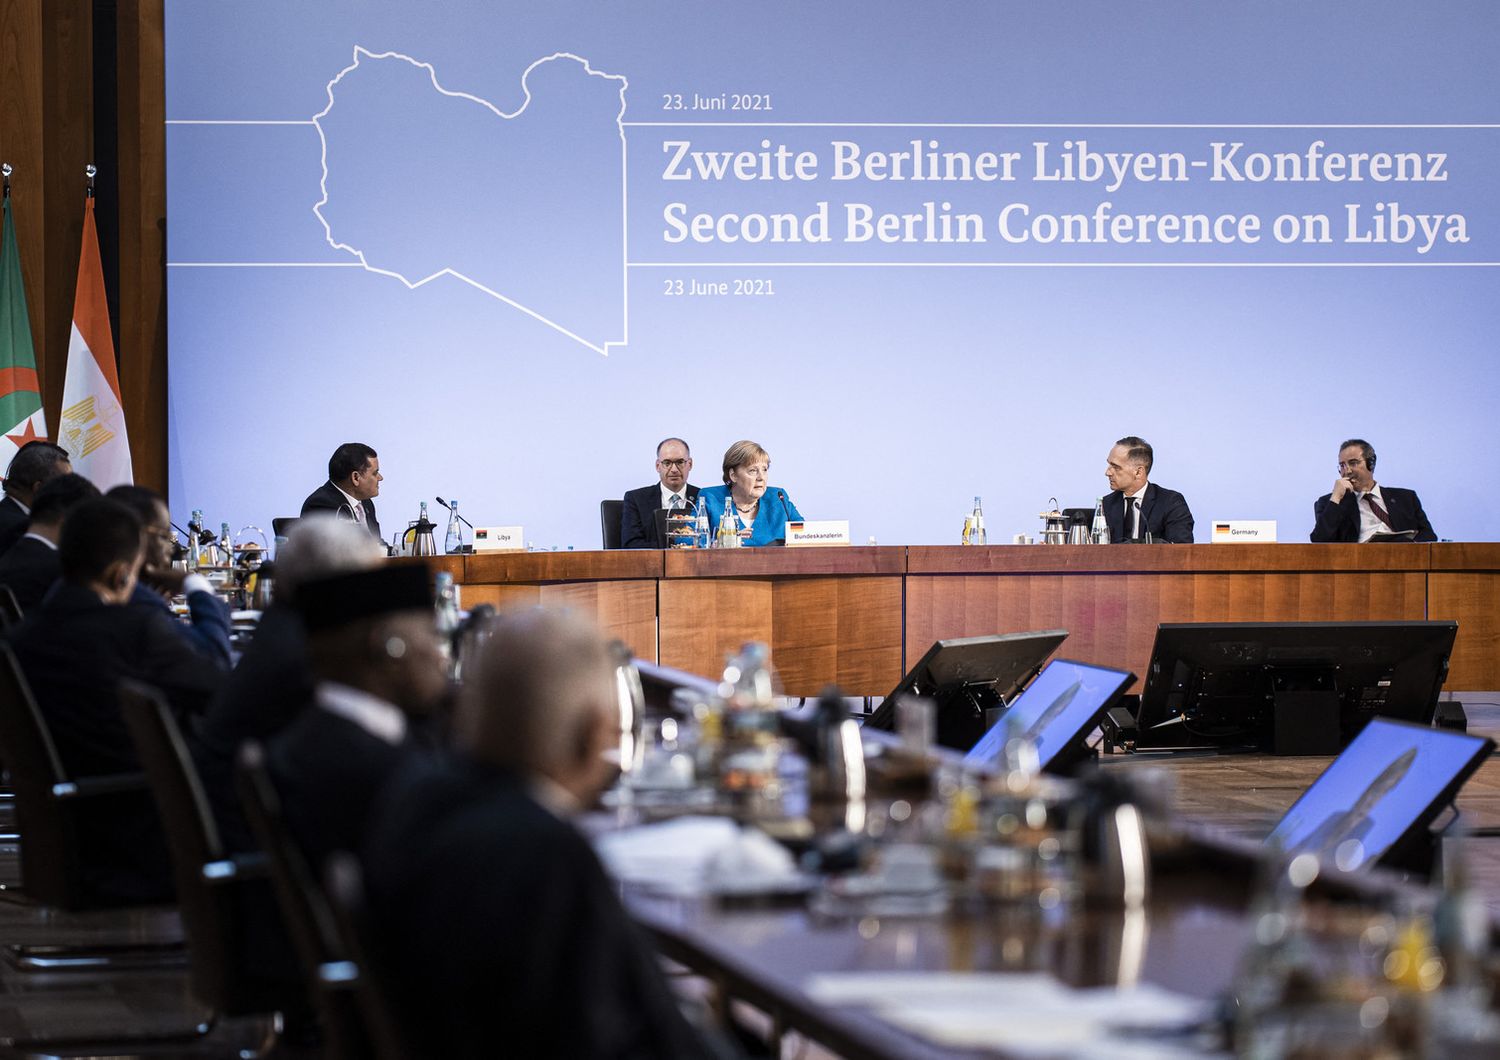 &nbsp;conferenza sulla libia a berlino